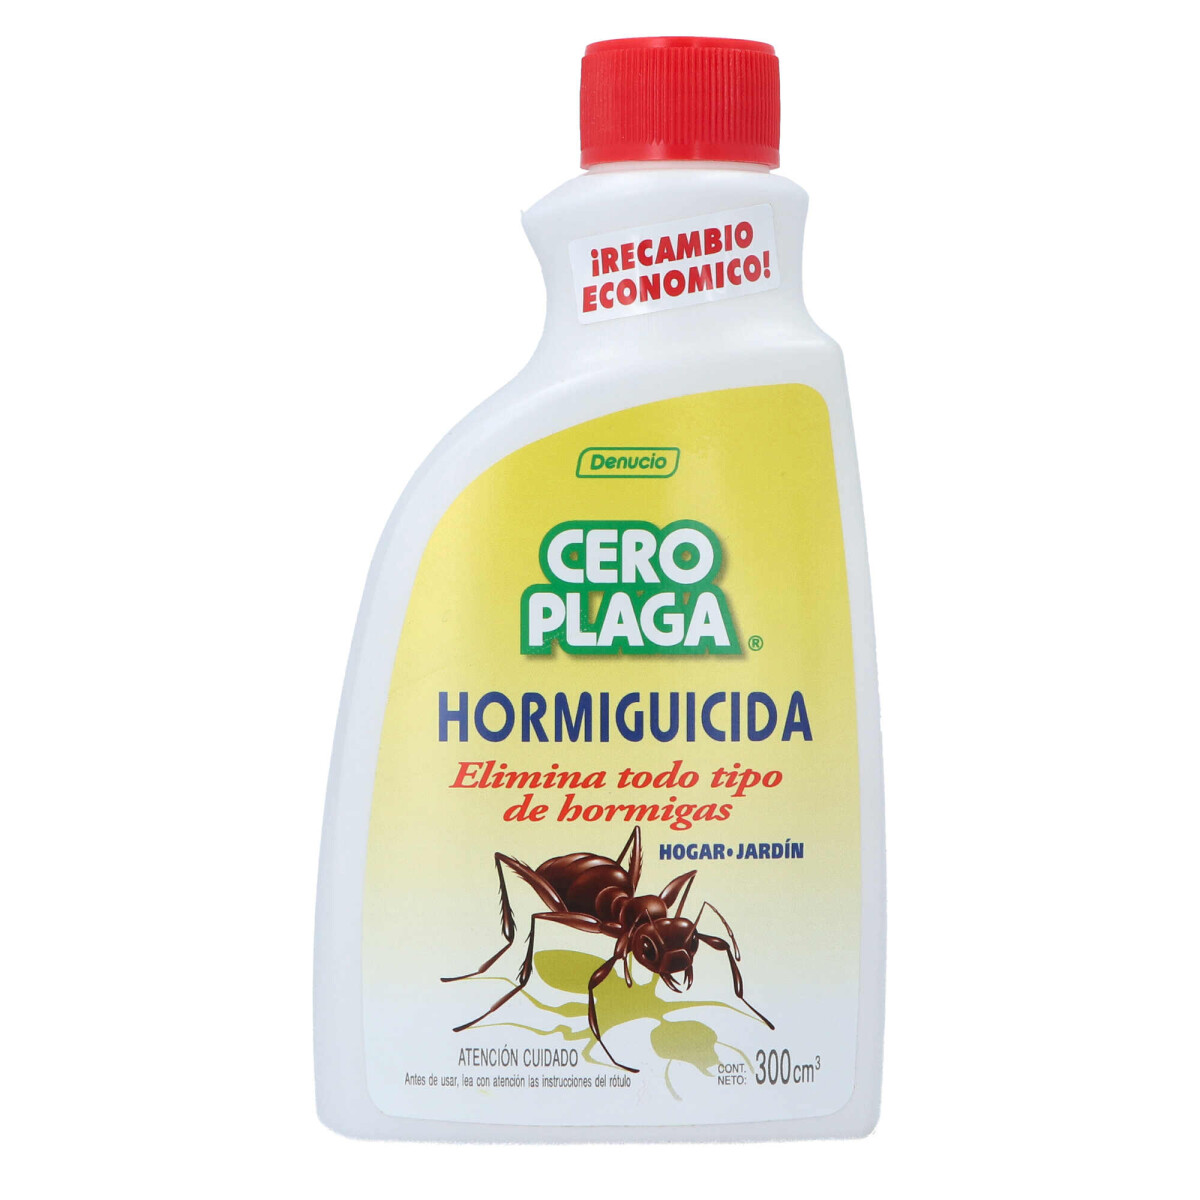 CERO PLAGA Hormiguicida - RECAMBIO 300cc 